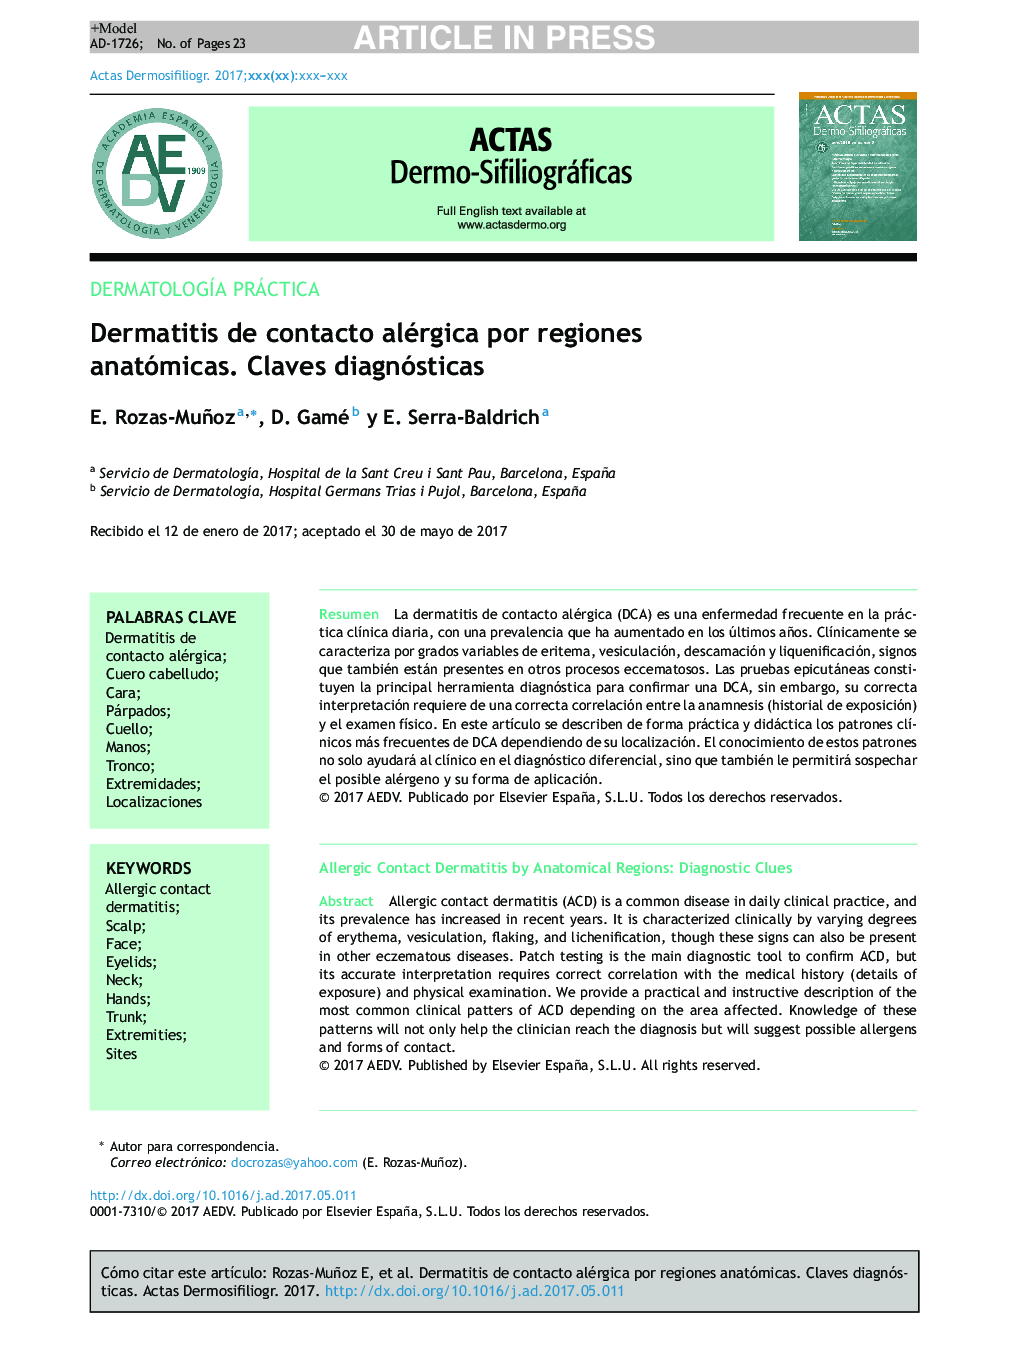 Dermatitis de contacto alérgica por regiones anatómicas. Claves diagnósticas